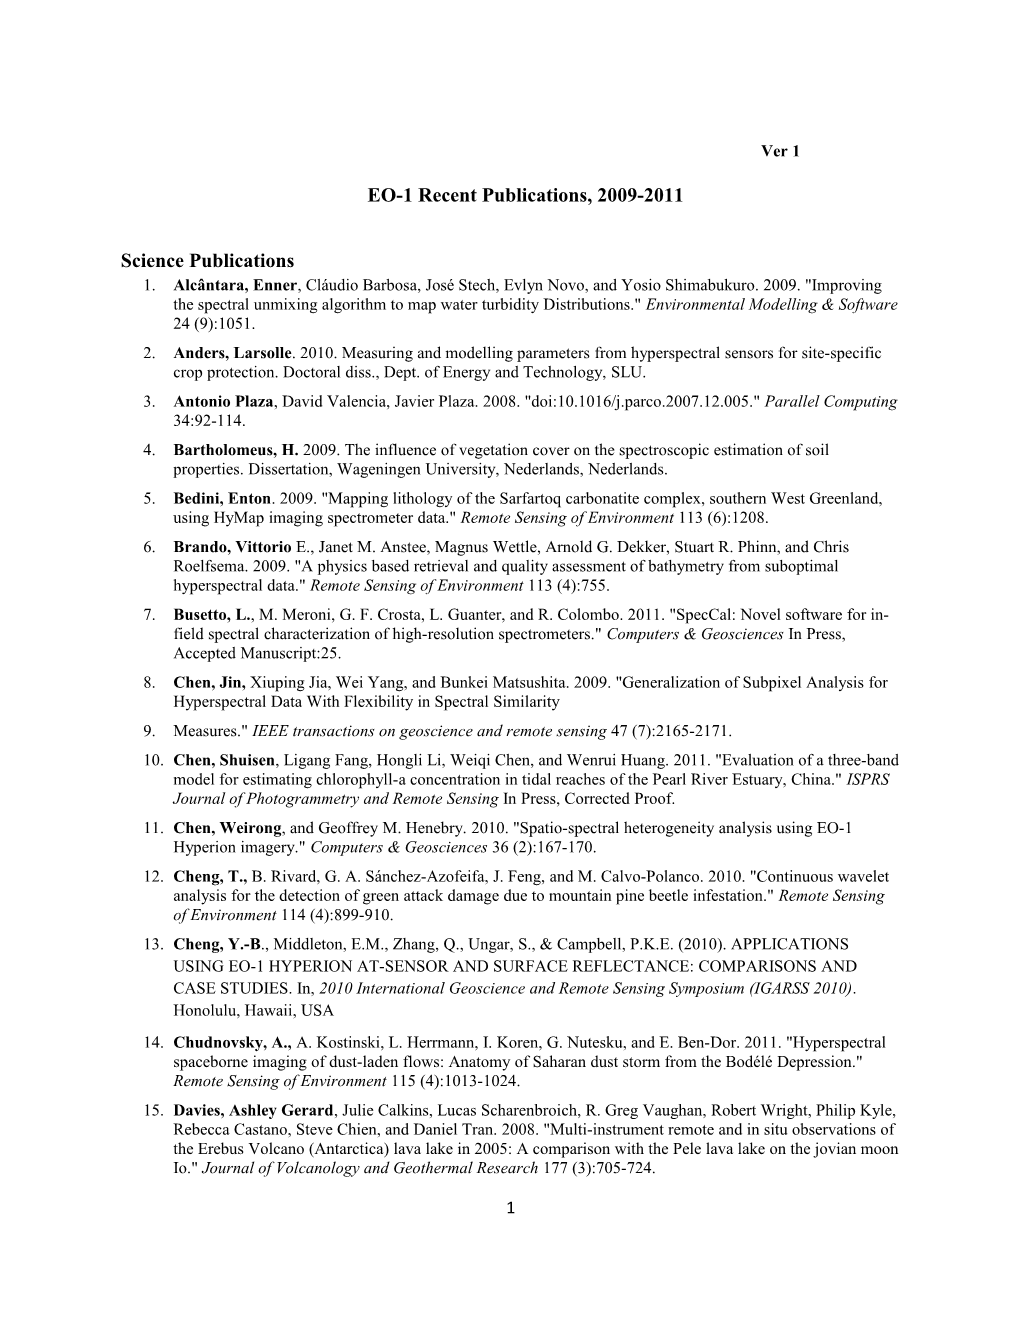 EO-1 Recent Publications, 2009-2011